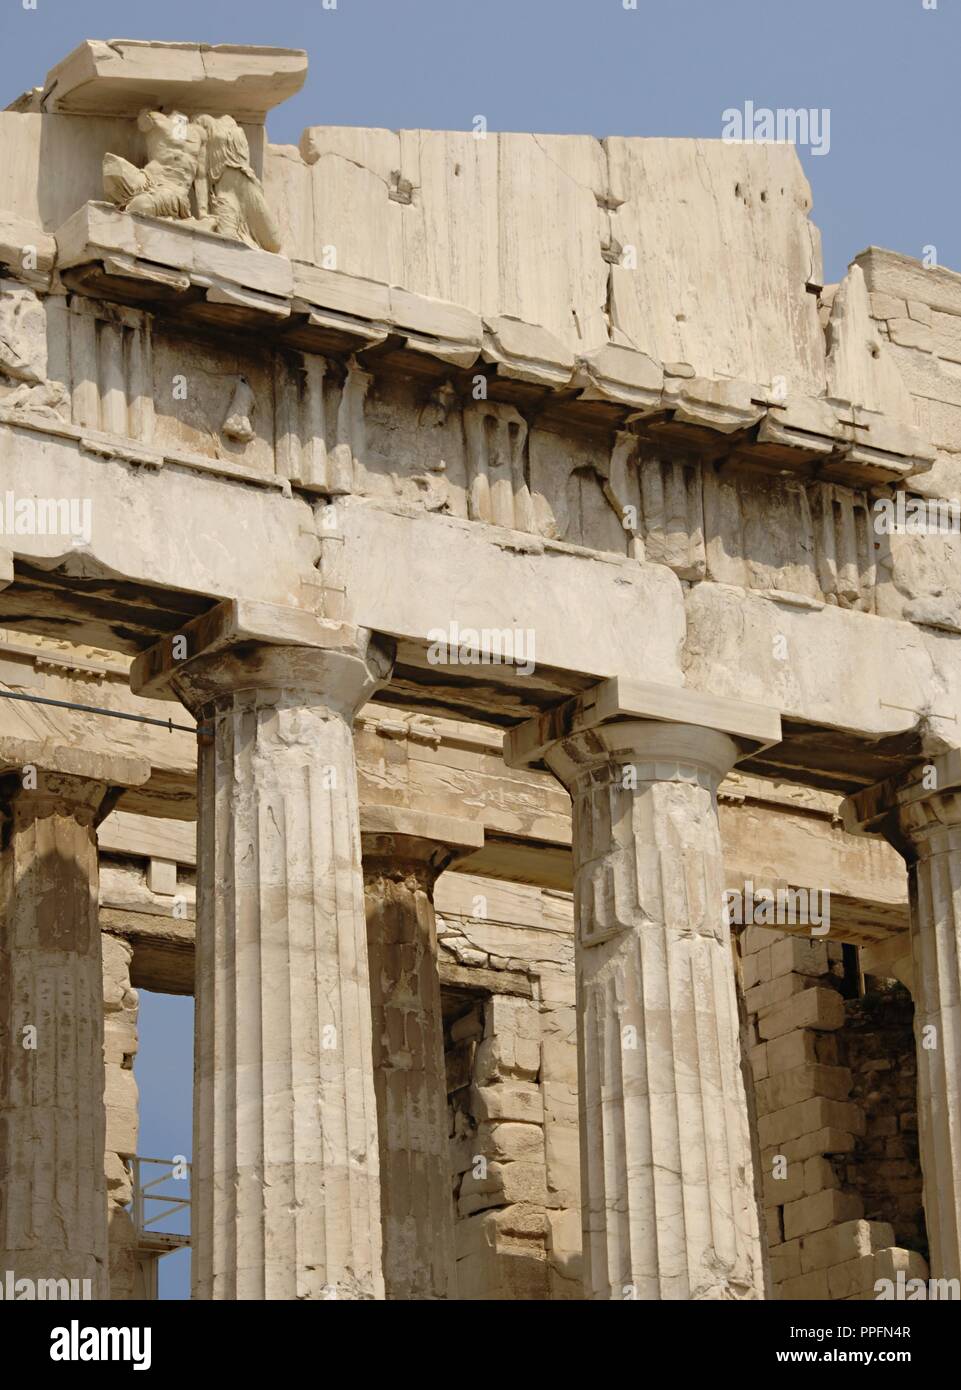 Grecia. Atenas. El Partenón. 447-438 A.C. en estilo dórico bajo el liderazgo de Pericles. El edificio fue diseñado por los arquitectos Ictinos y Callicrates. La acrópolis. Foto de stock